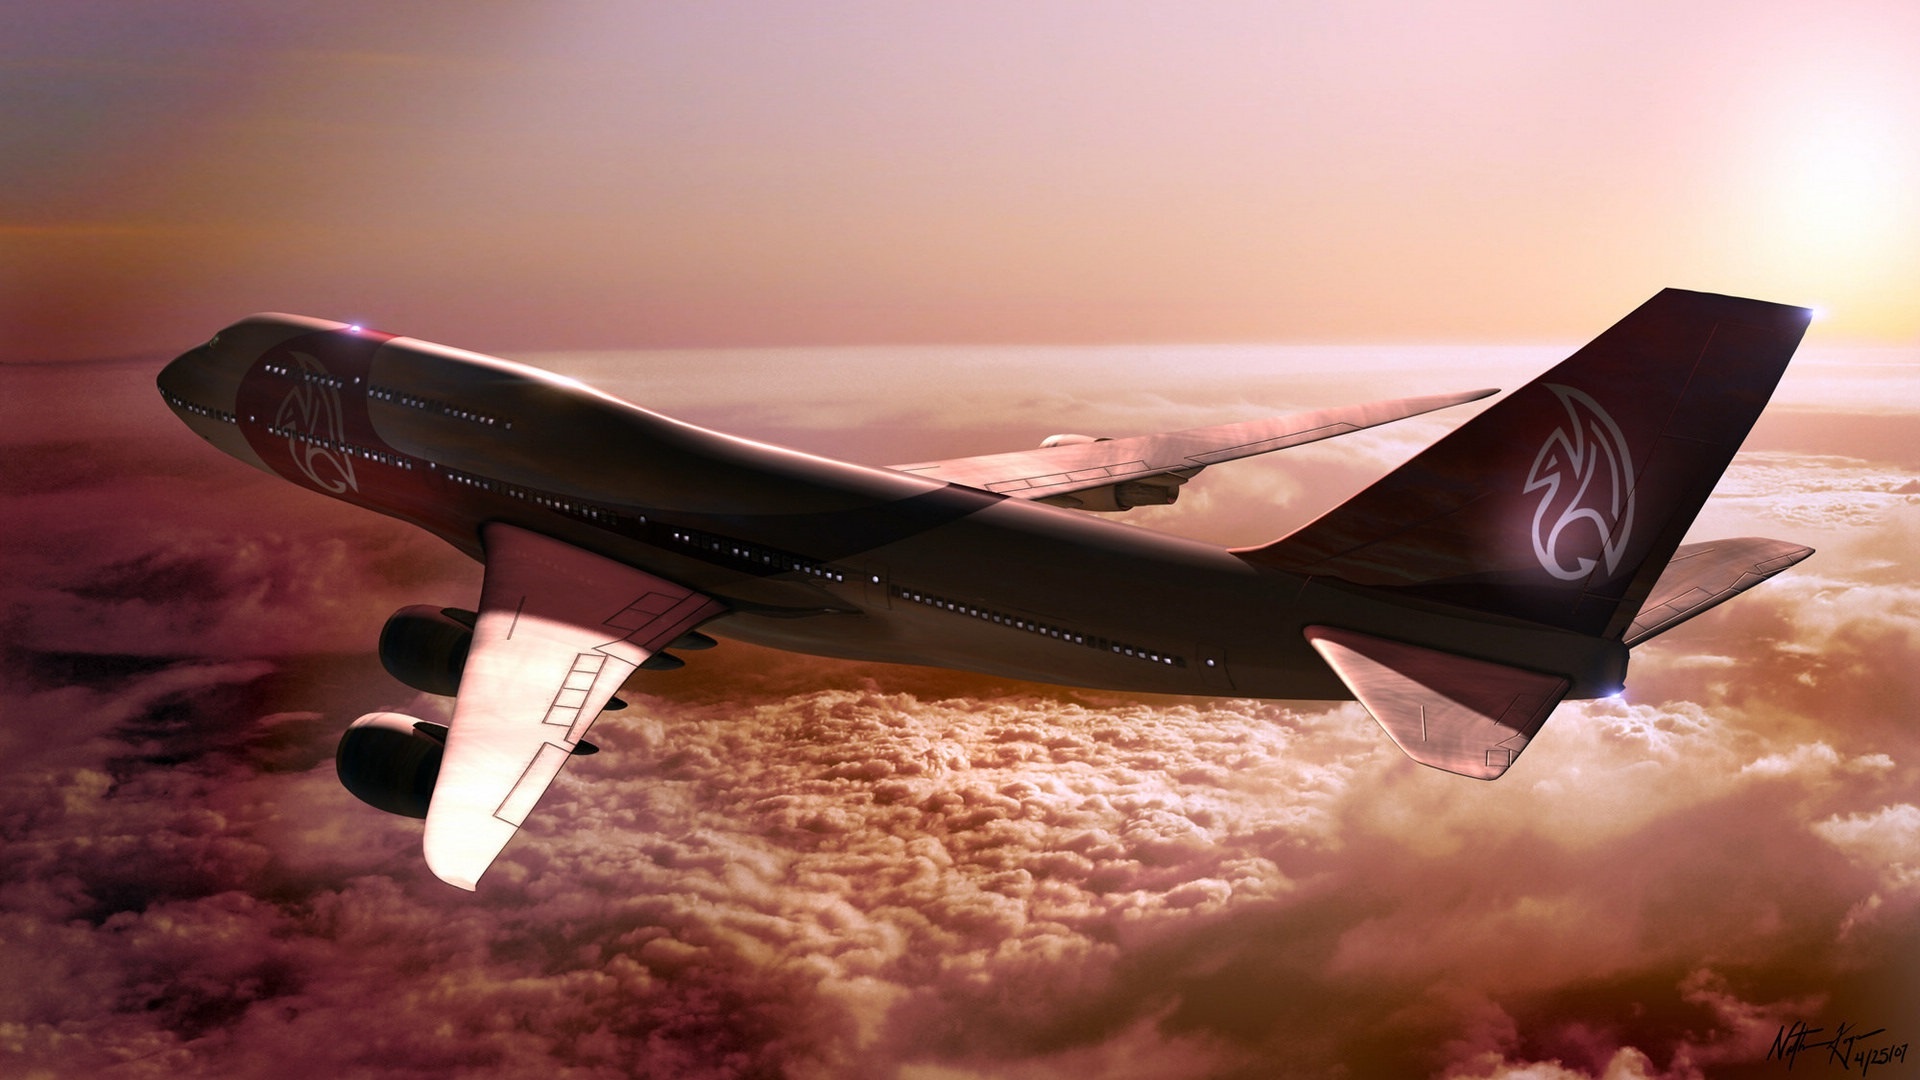 Boeing 747, Breathtaking views, Sky-high beauty, Aviation wonders, 1920x1080 Full HD Desktop